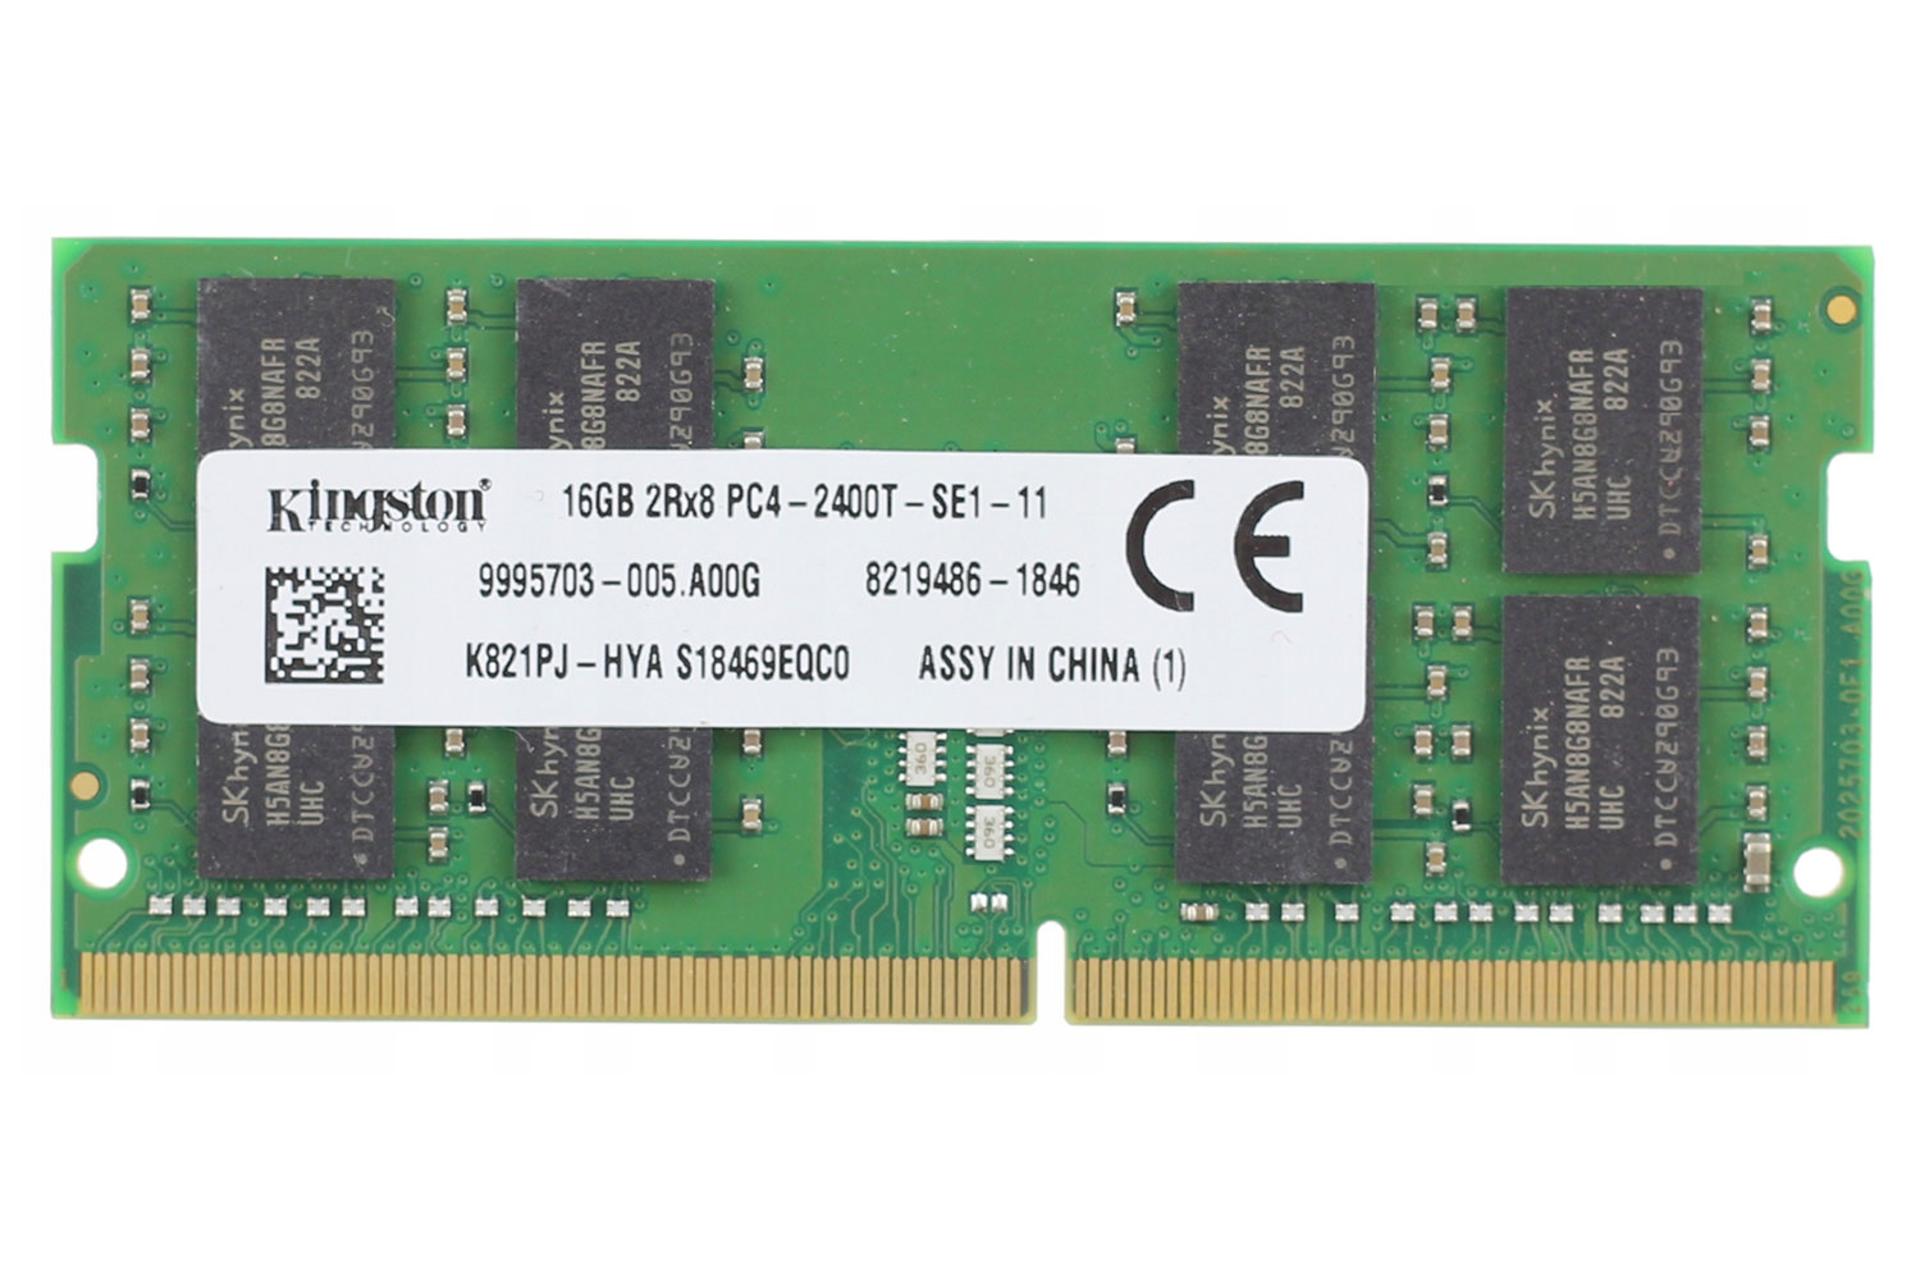 رم کینگستون Kingston K821PJ-HYA 16GB DDR4-2400 CL17